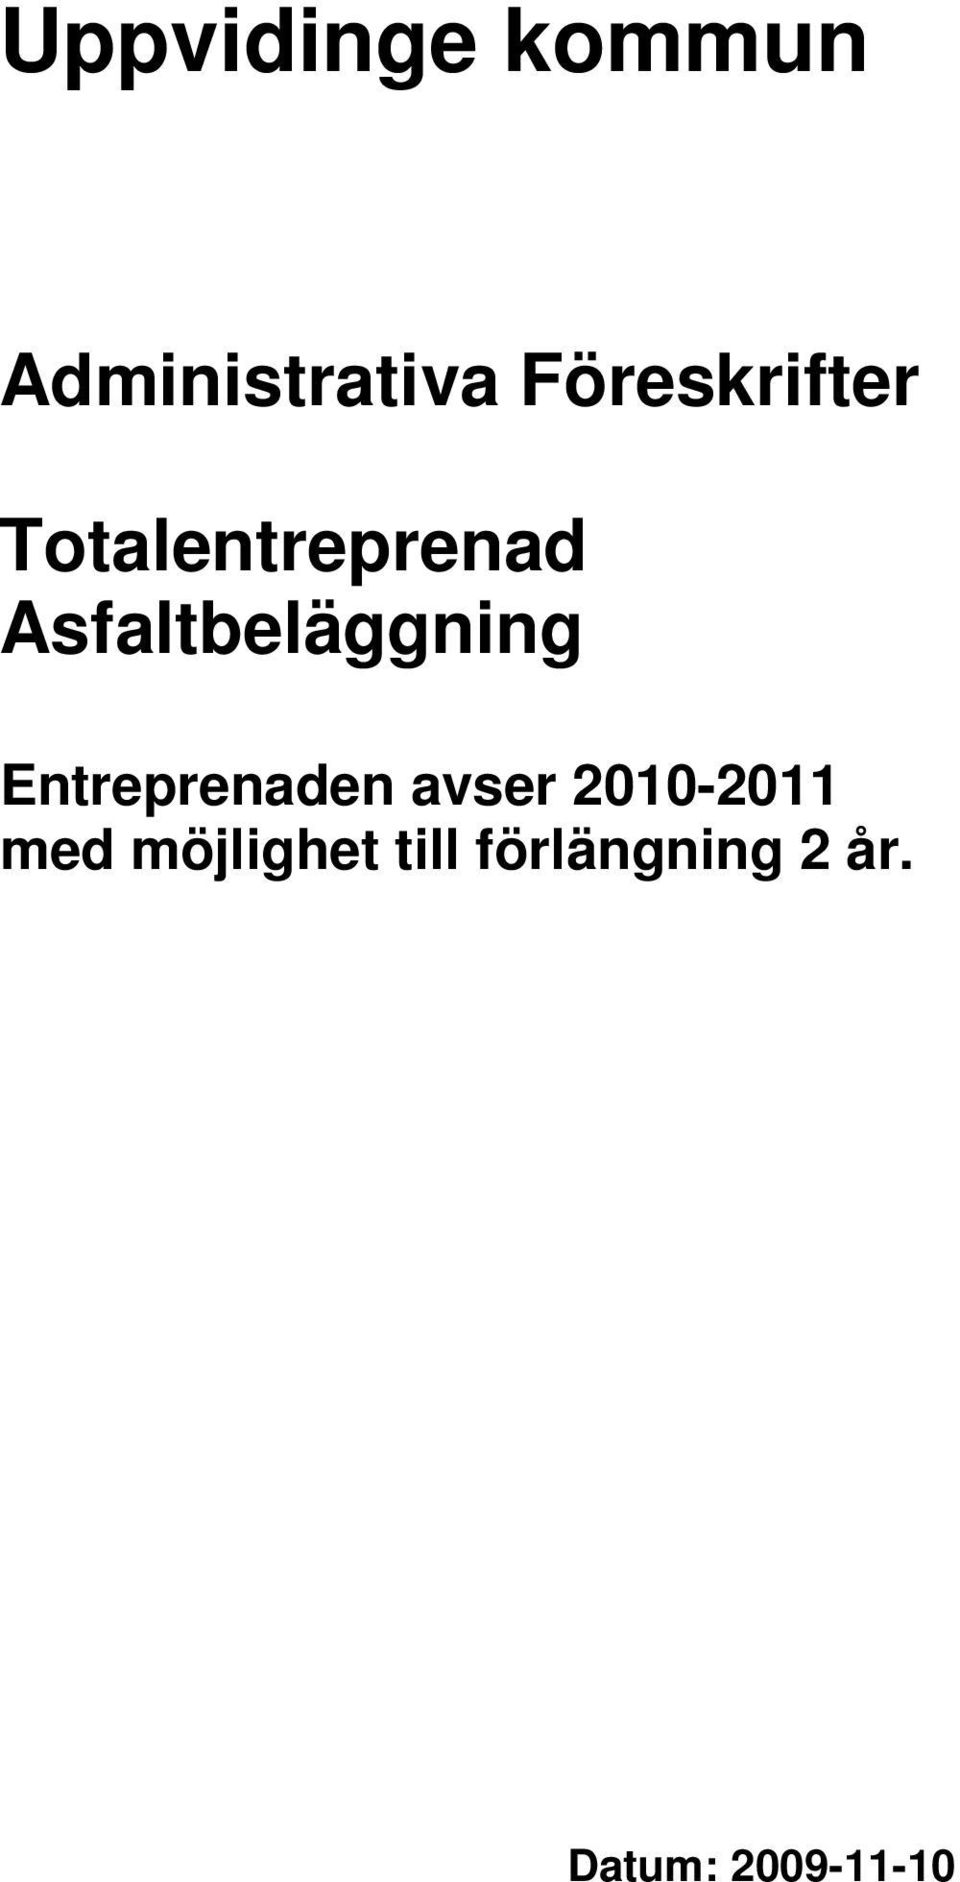 Entreprenaden avser 2010-2011 med